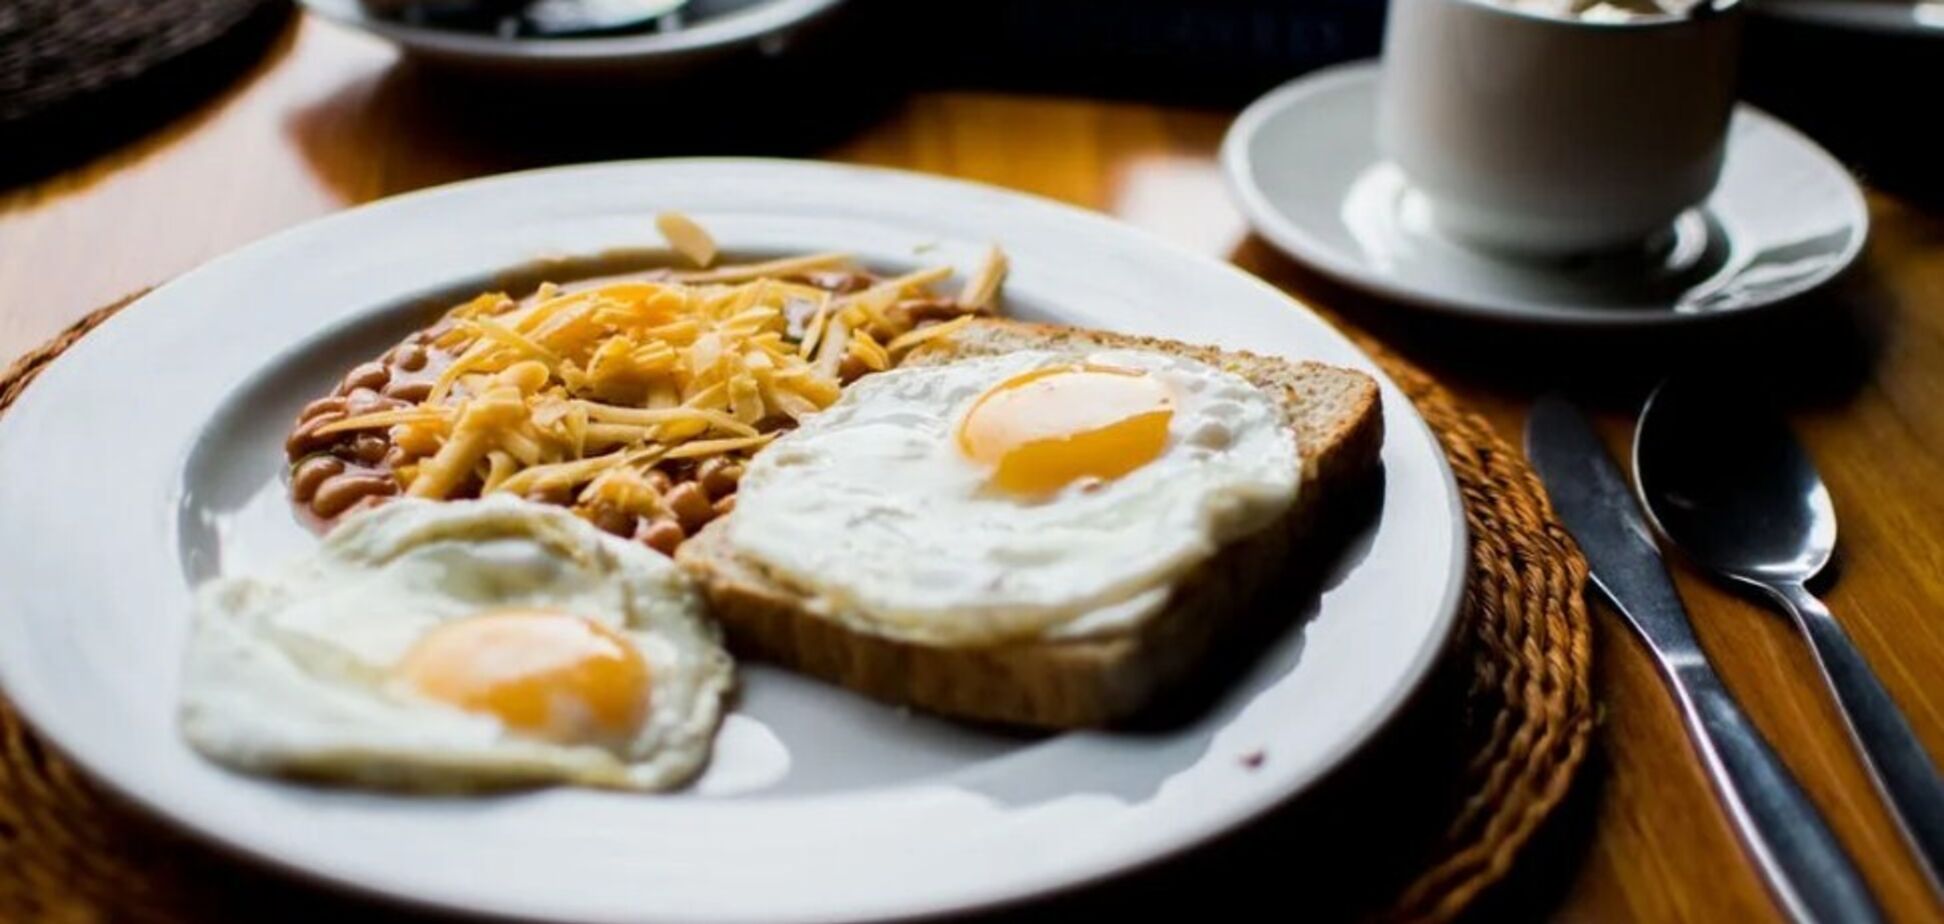 Как приготовить популярный завтрак крок-мадам: яичница и сэндвич одновременно